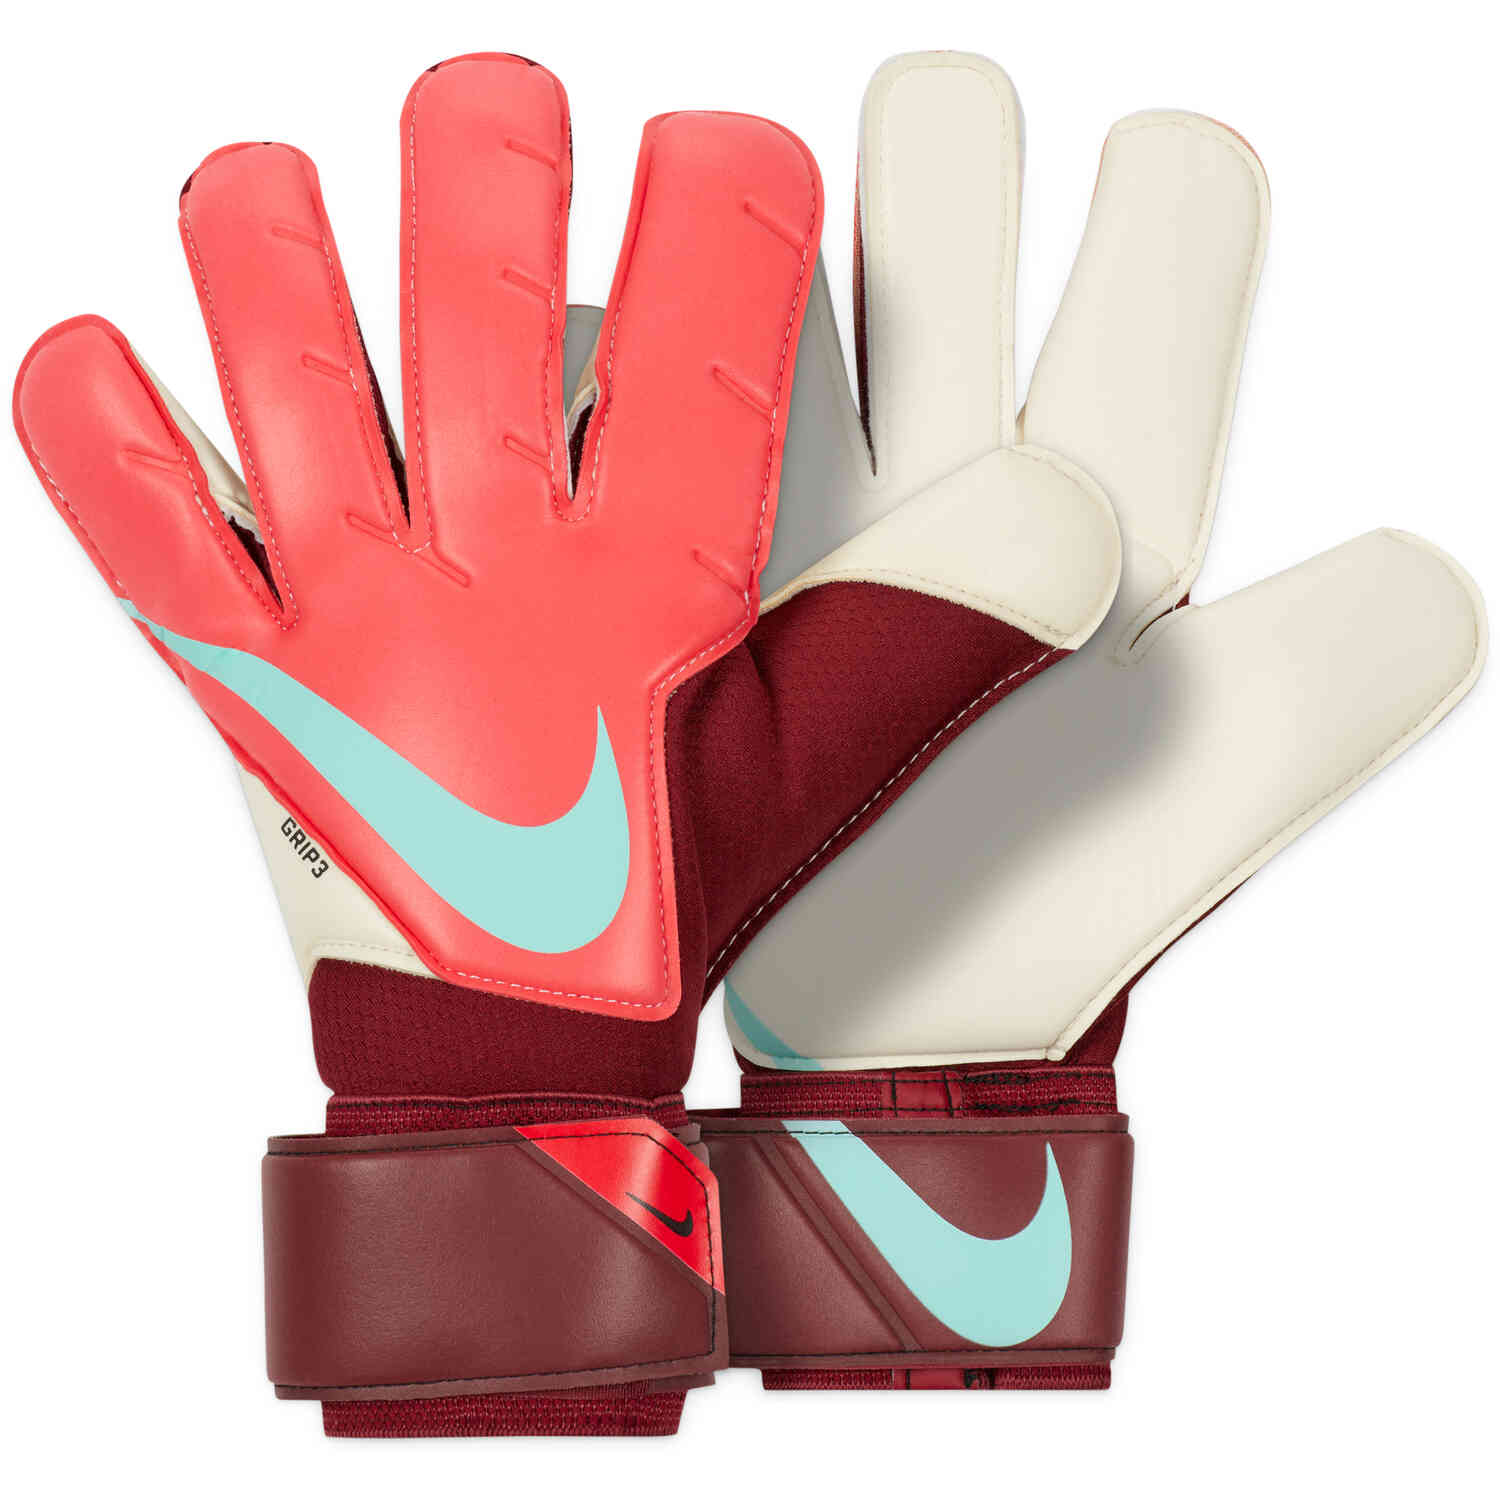 Nike Goalkeeper Gloves - Siren Red, Team Red & Dynamic Blue - Soccer Master